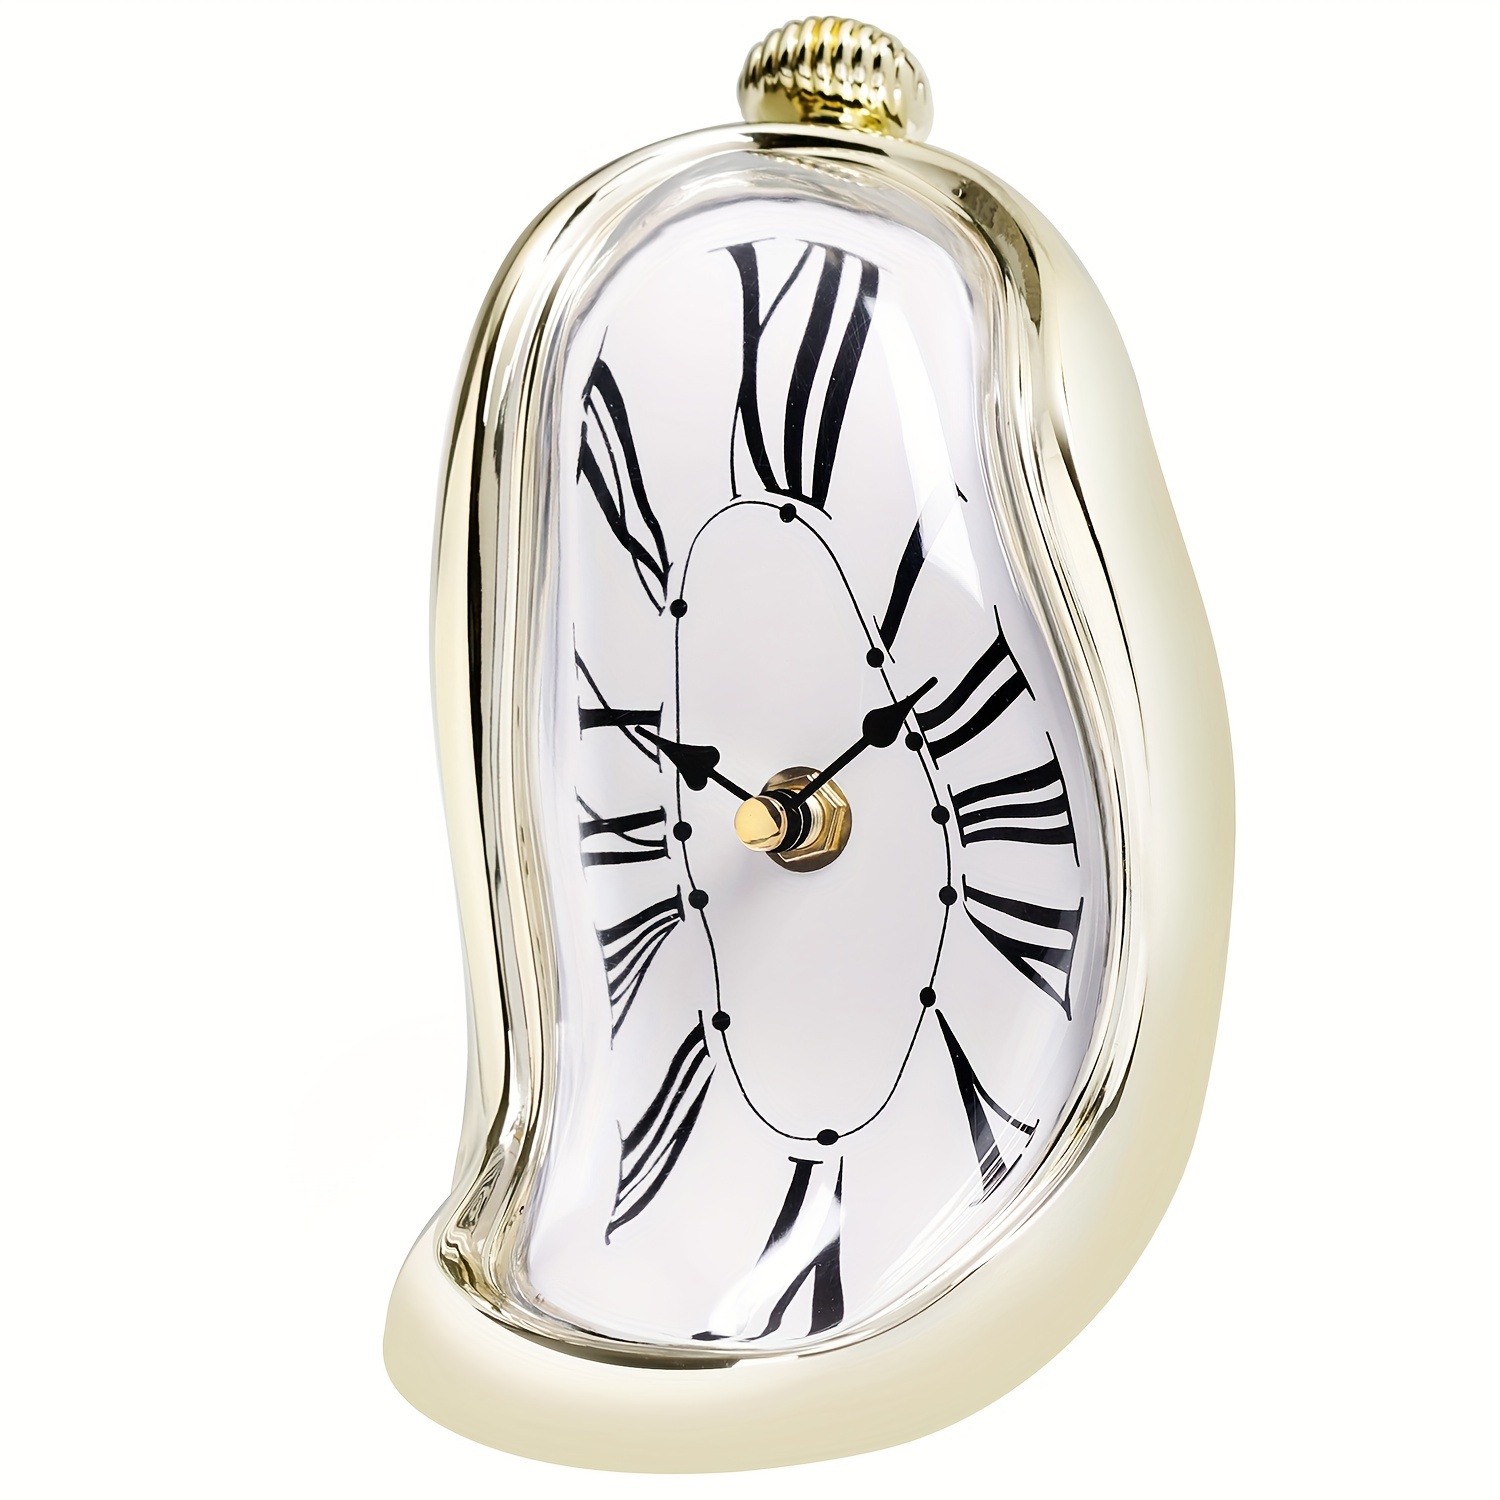 Reloj de mesa decorativo Flip Blanco, diseño unico y actual con tarjetas  auto cambiantes de la marca Fisura ideal para regalar. — WonderfulHome Shop